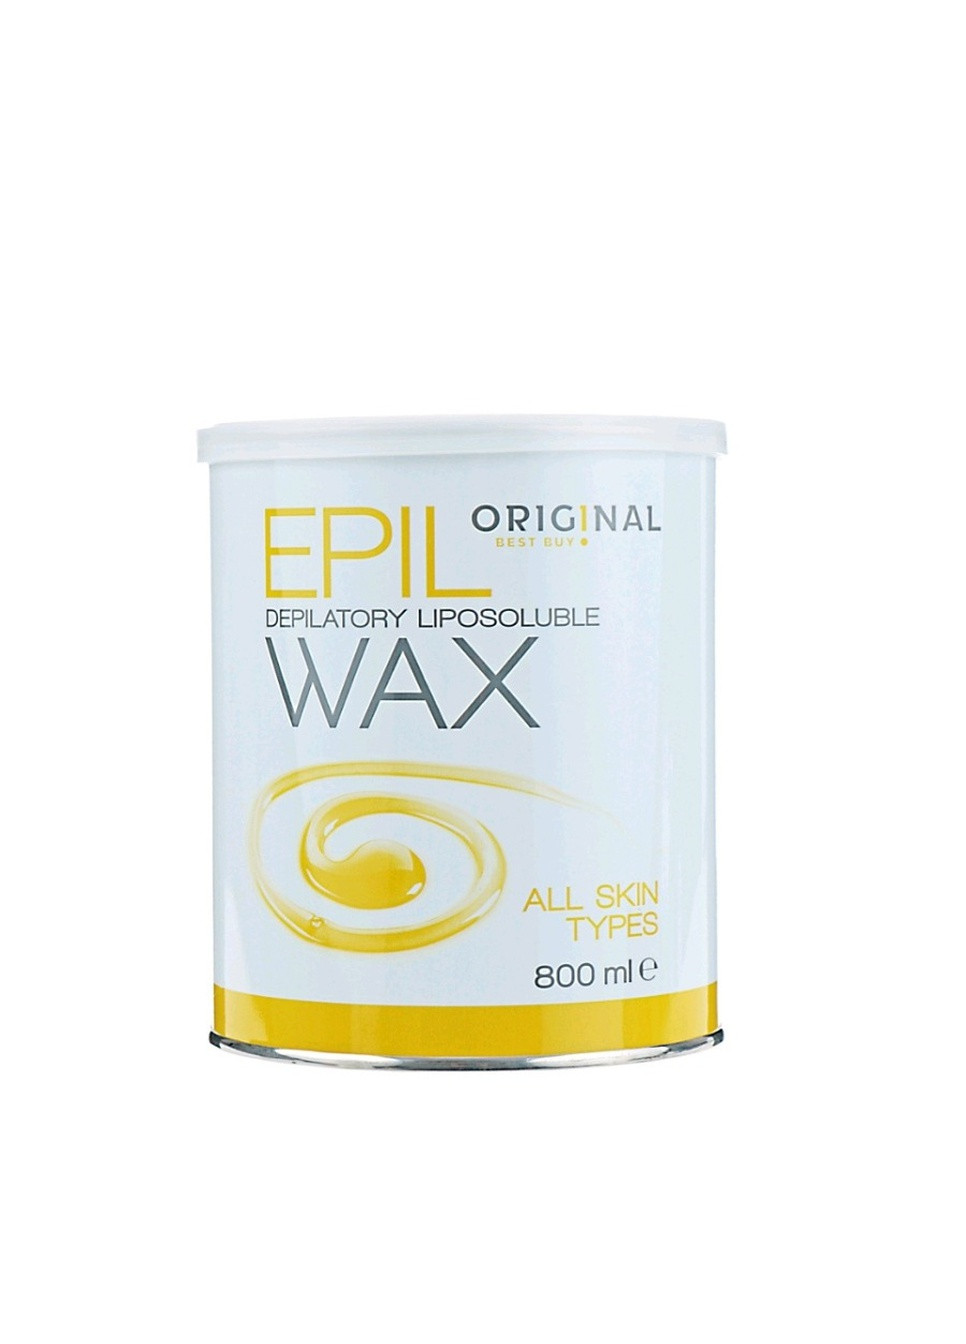 Віск для депіляції всіх типів шкіри 800 мл All Skin Types Original Best Buy epil wax (259115983)